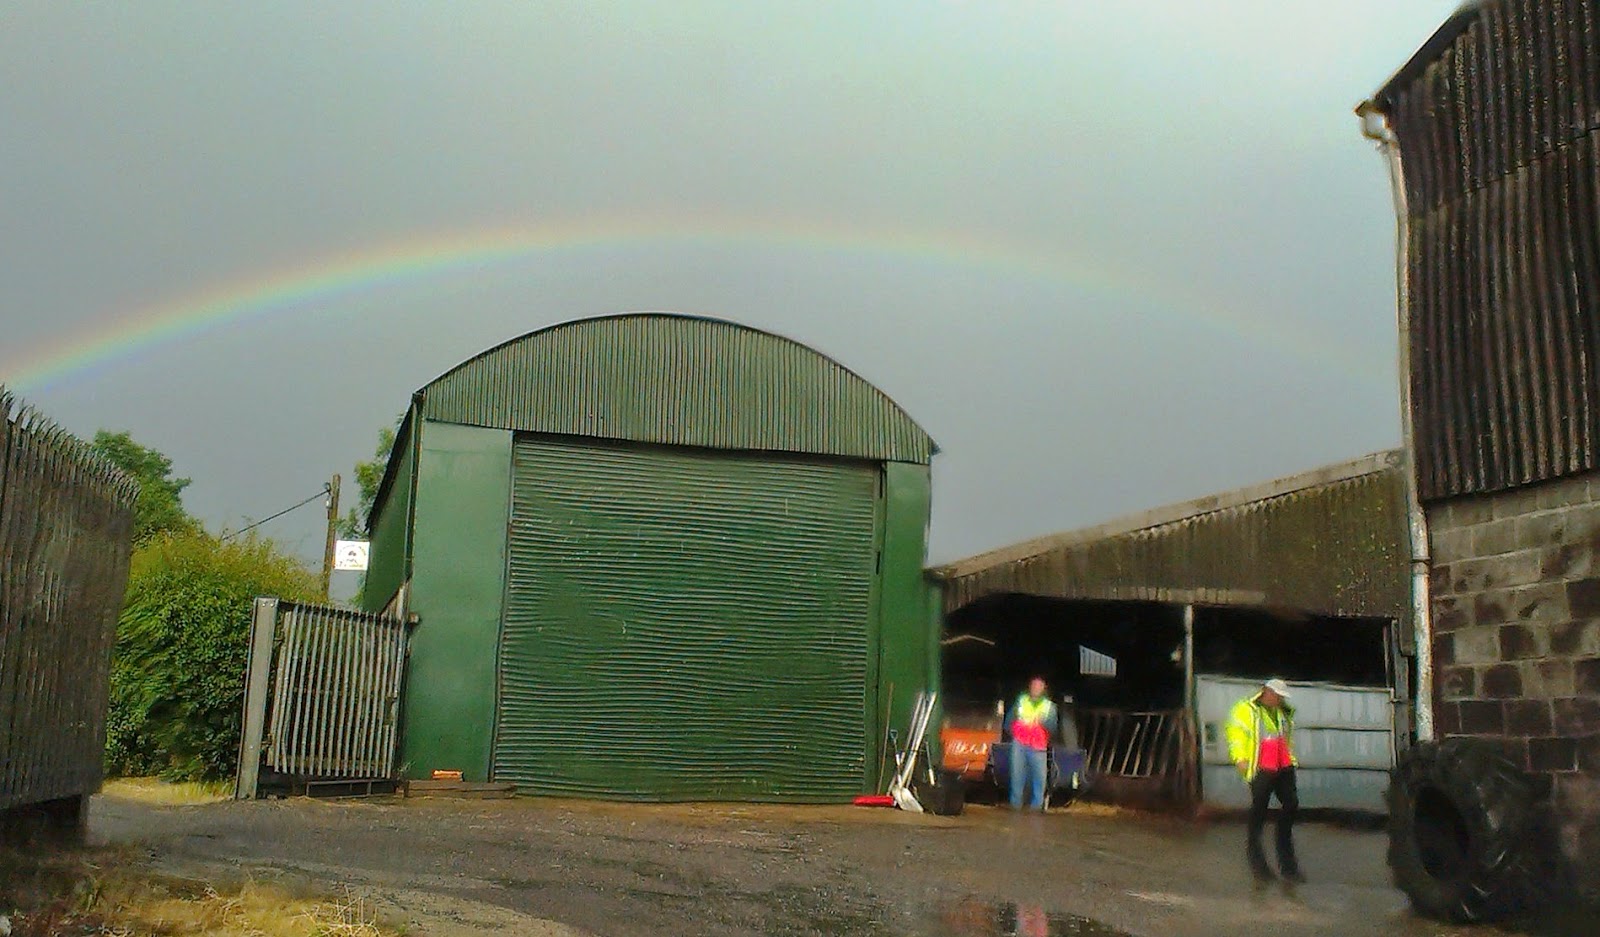 Rainbow over Pilton